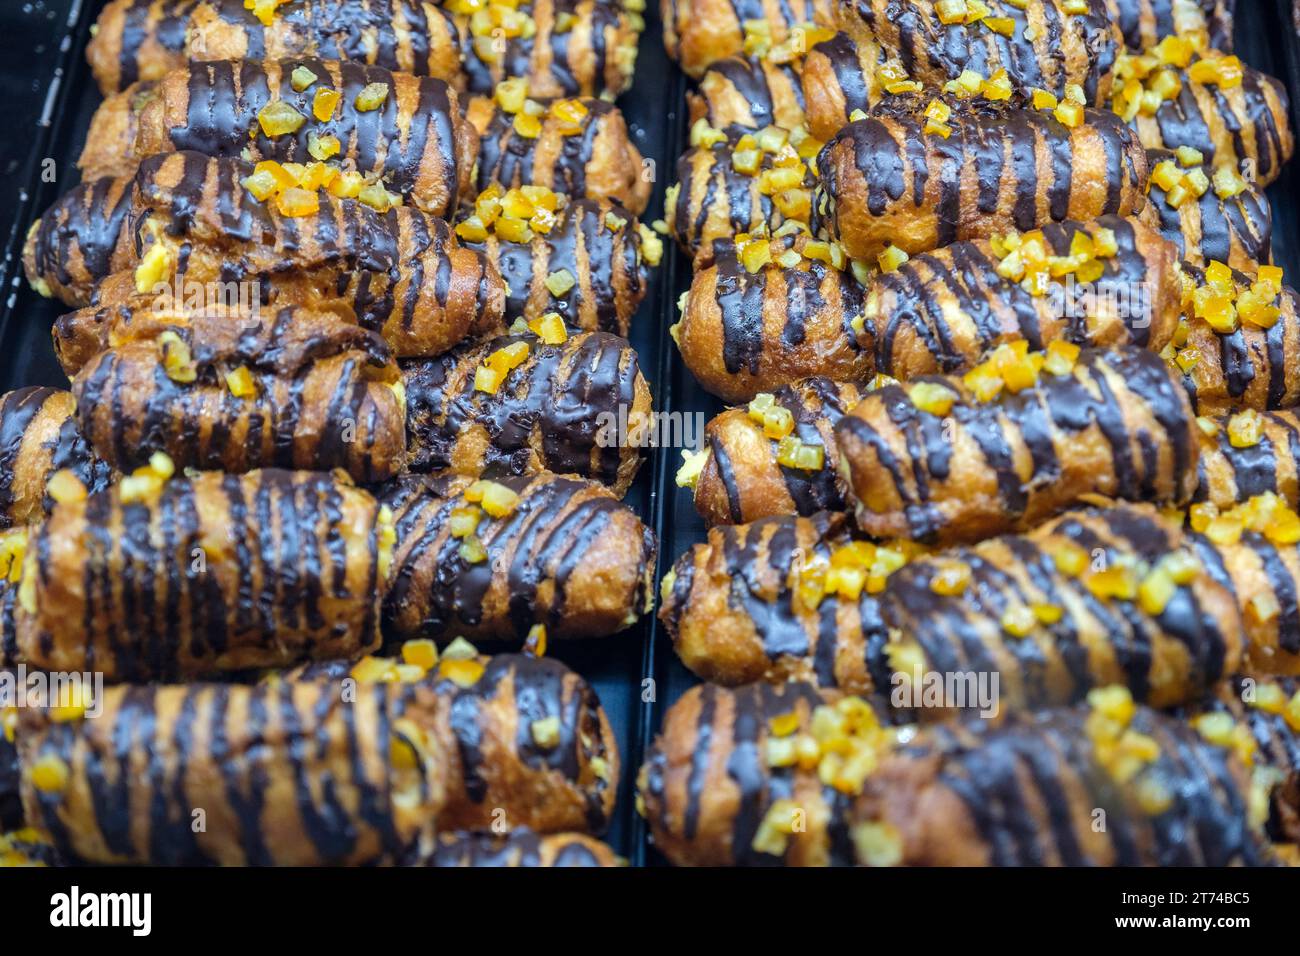 Girona xuixos, xuxos, susos, tradizionale pasticceria catalana ricoperta di zucchero dolce fritta in profondità ripiena di crema catalana, Girona, Catalogna, Spagna Foto Stock